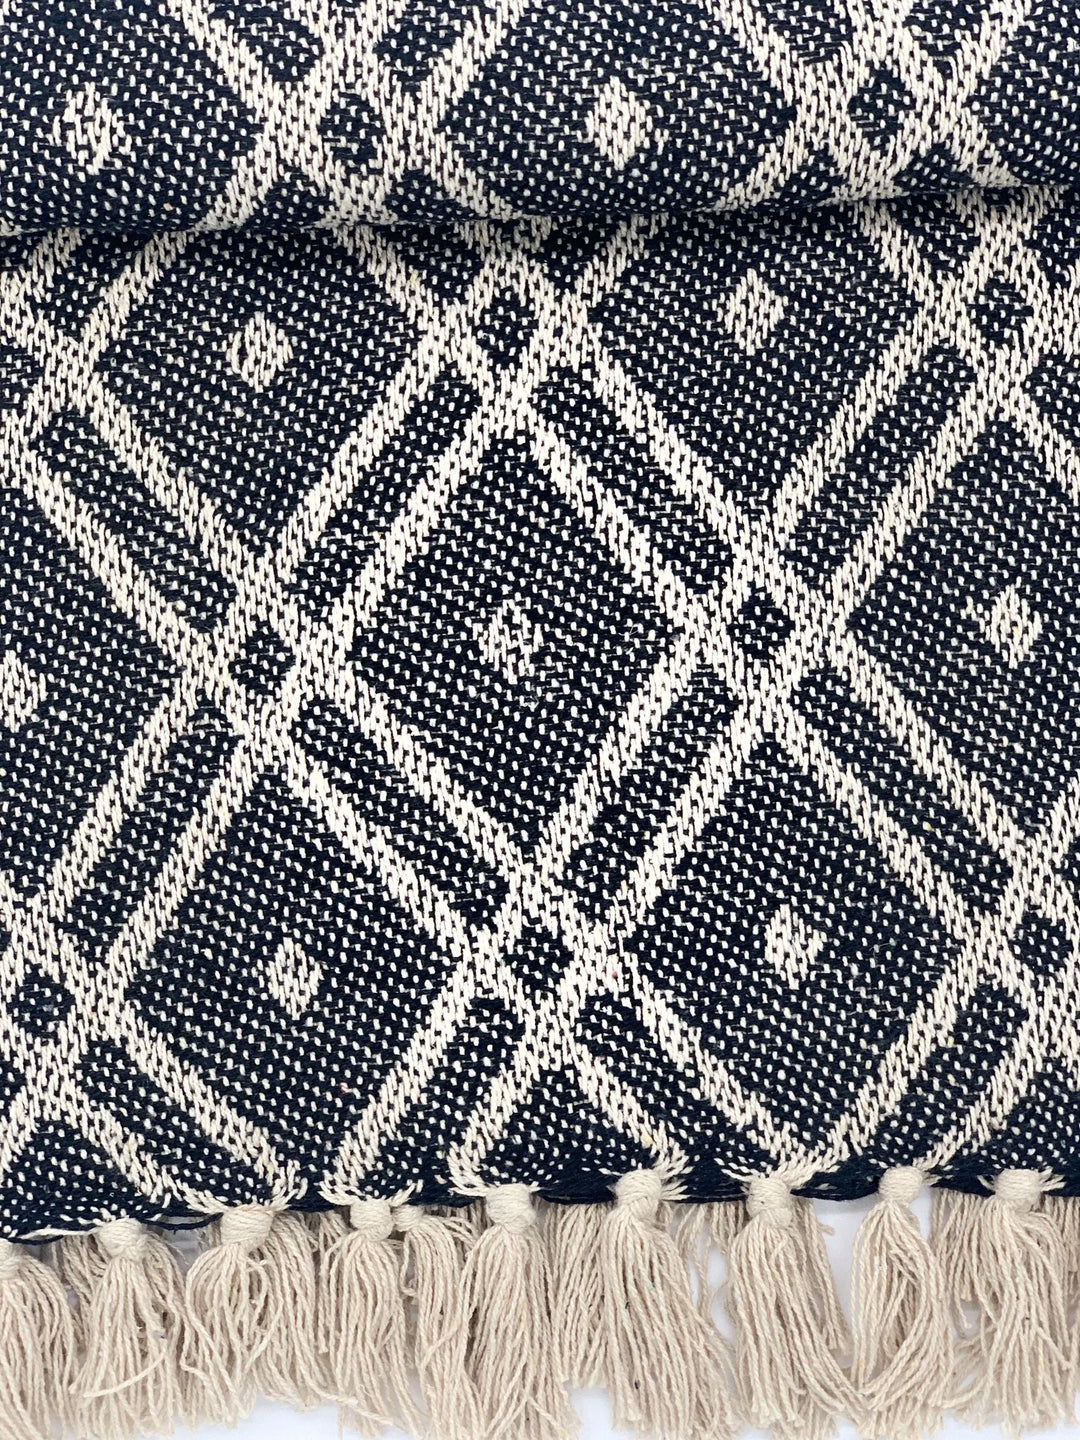 Decke aus Baumwolle Boho Style Schwarz Weiß Detailaufnahme Muster